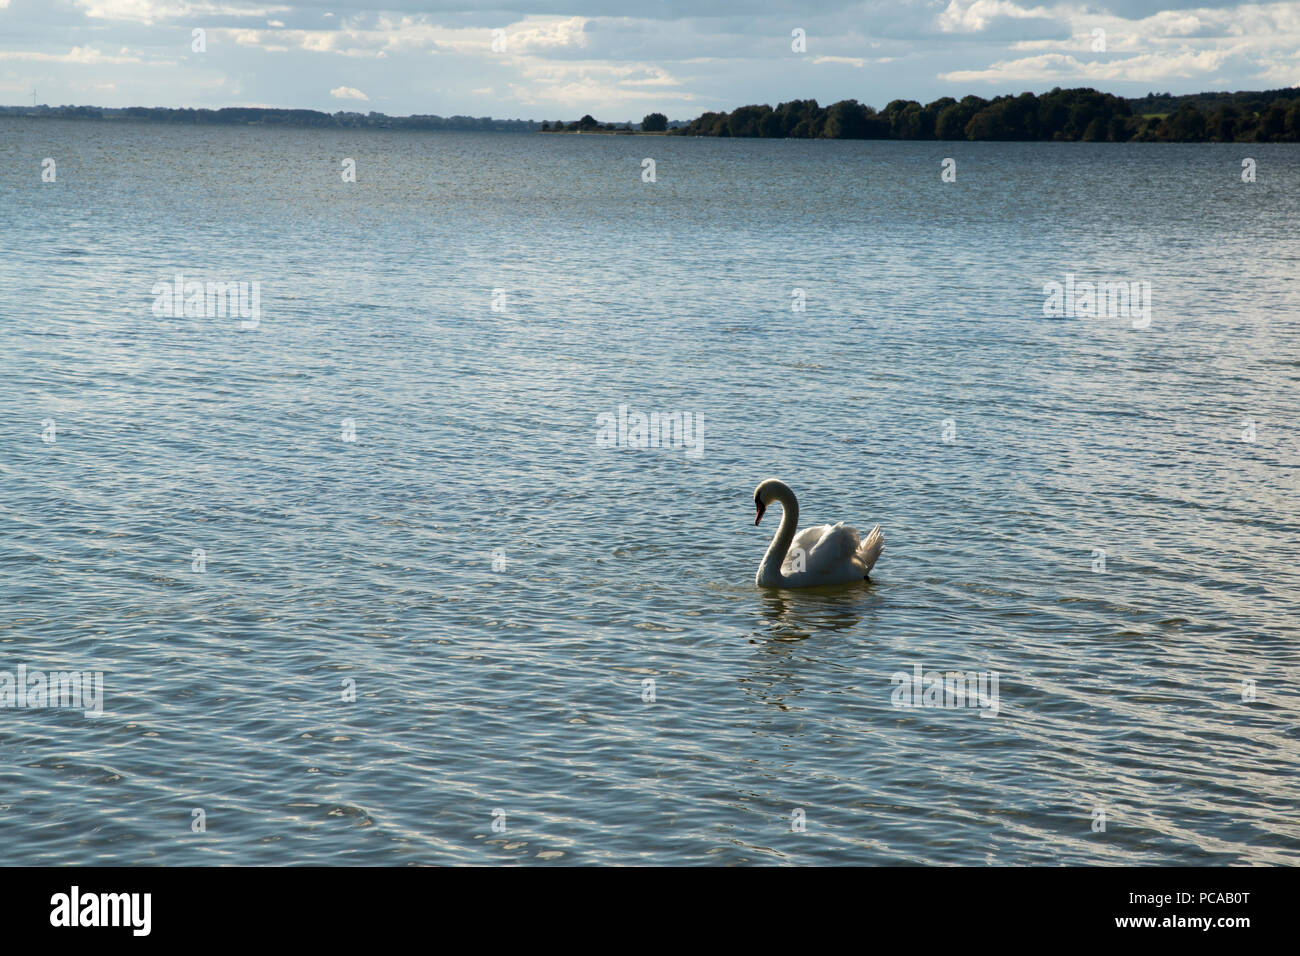 Cisne nadando en la Bahía de parada Stresow en la isla de Ruegen im Mecklemburgo Pommerania en Alemania. Ein Höckerschwan schwimmt in der Stres Foto de stock